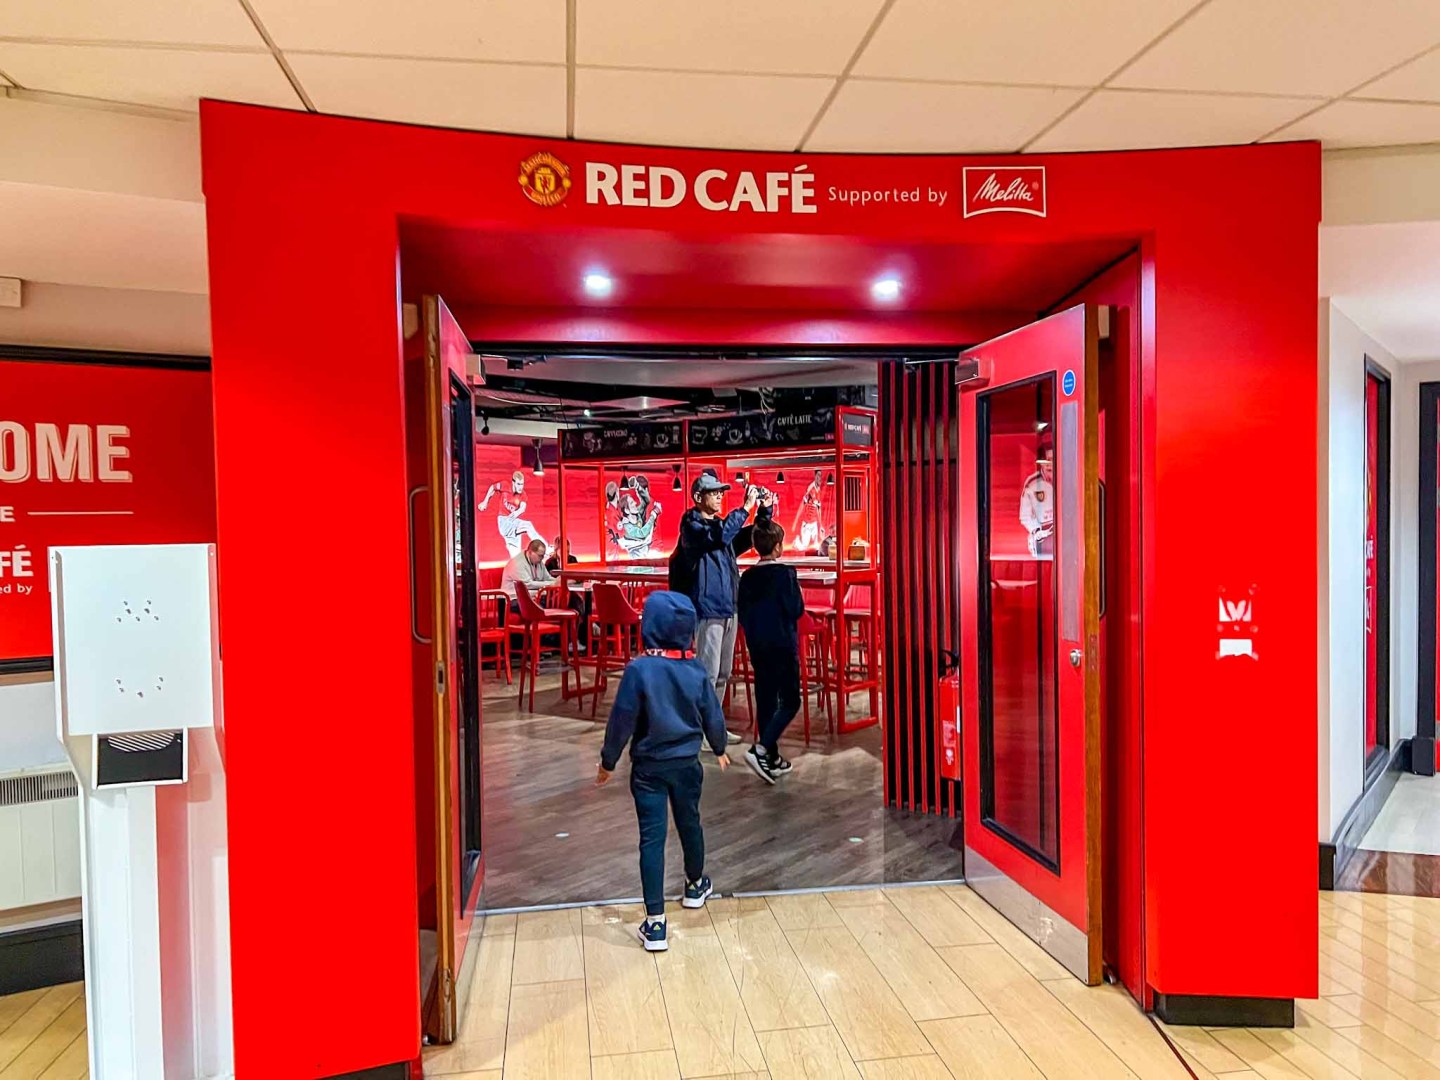 Visita al estadio del Manchester United, entrada al Red Cafe